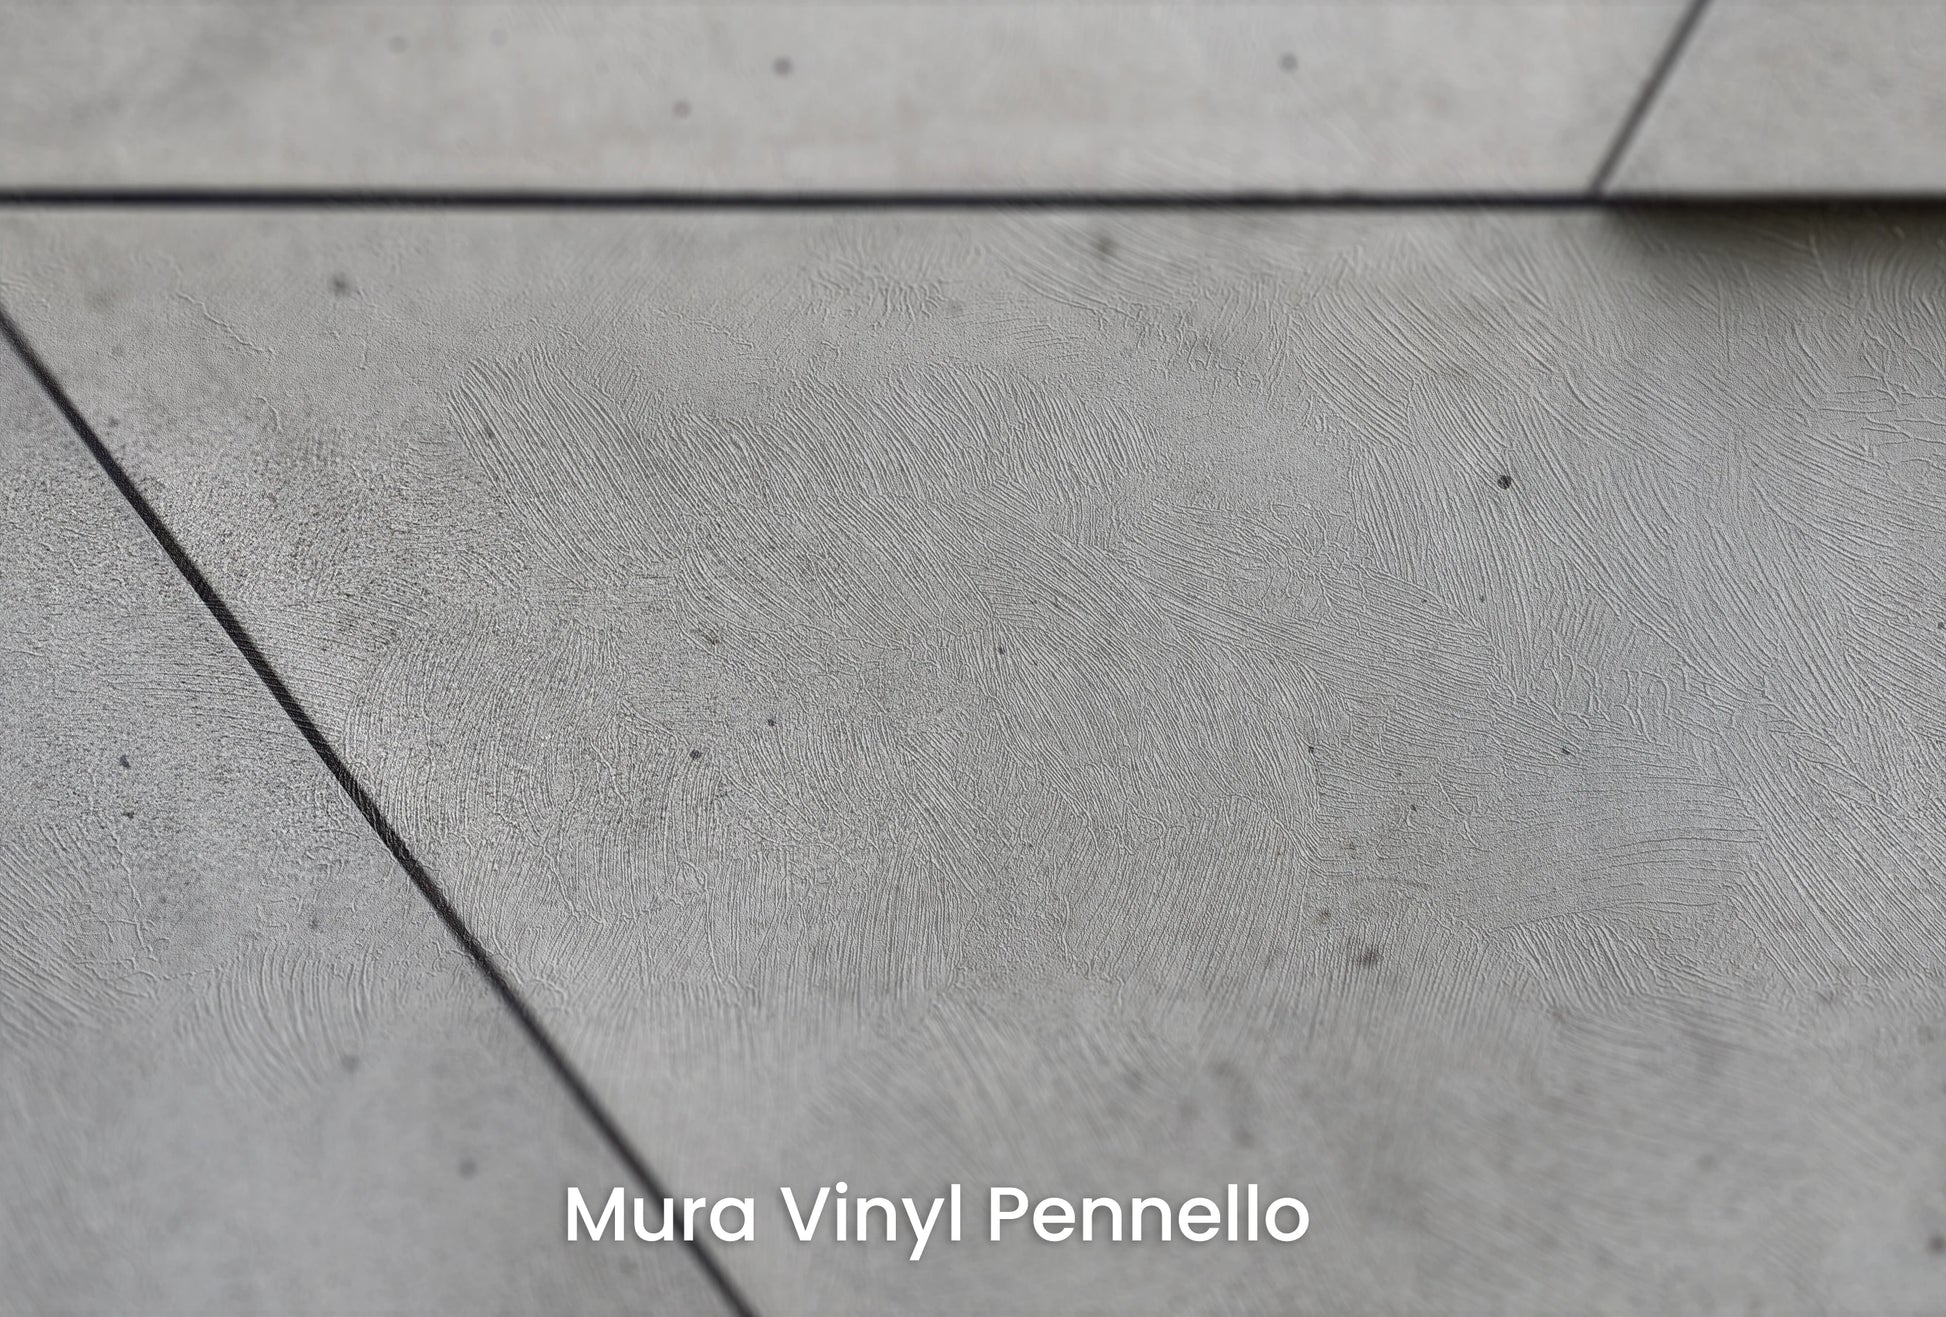 Zbliżenie na artystyczną fototapetę o nazwie Angular Mosaic na podłożu Mura Vinyl Pennello - faktura pociągnięć pędzla malarskiego.